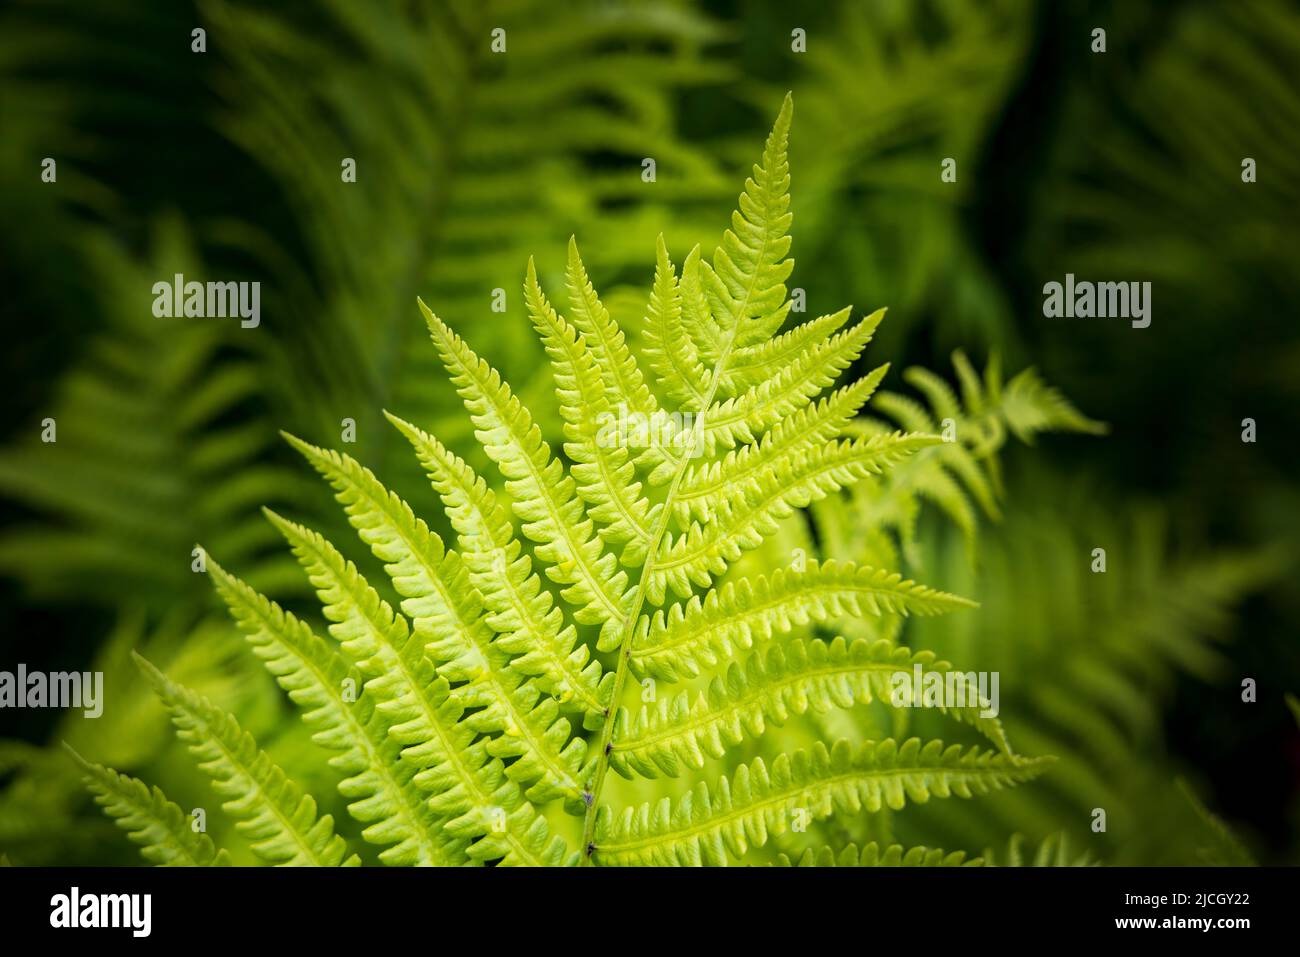 A bright green Lady Fern (Athyrium filix-Femina) against a dark fern background, North Europe Stock Photo